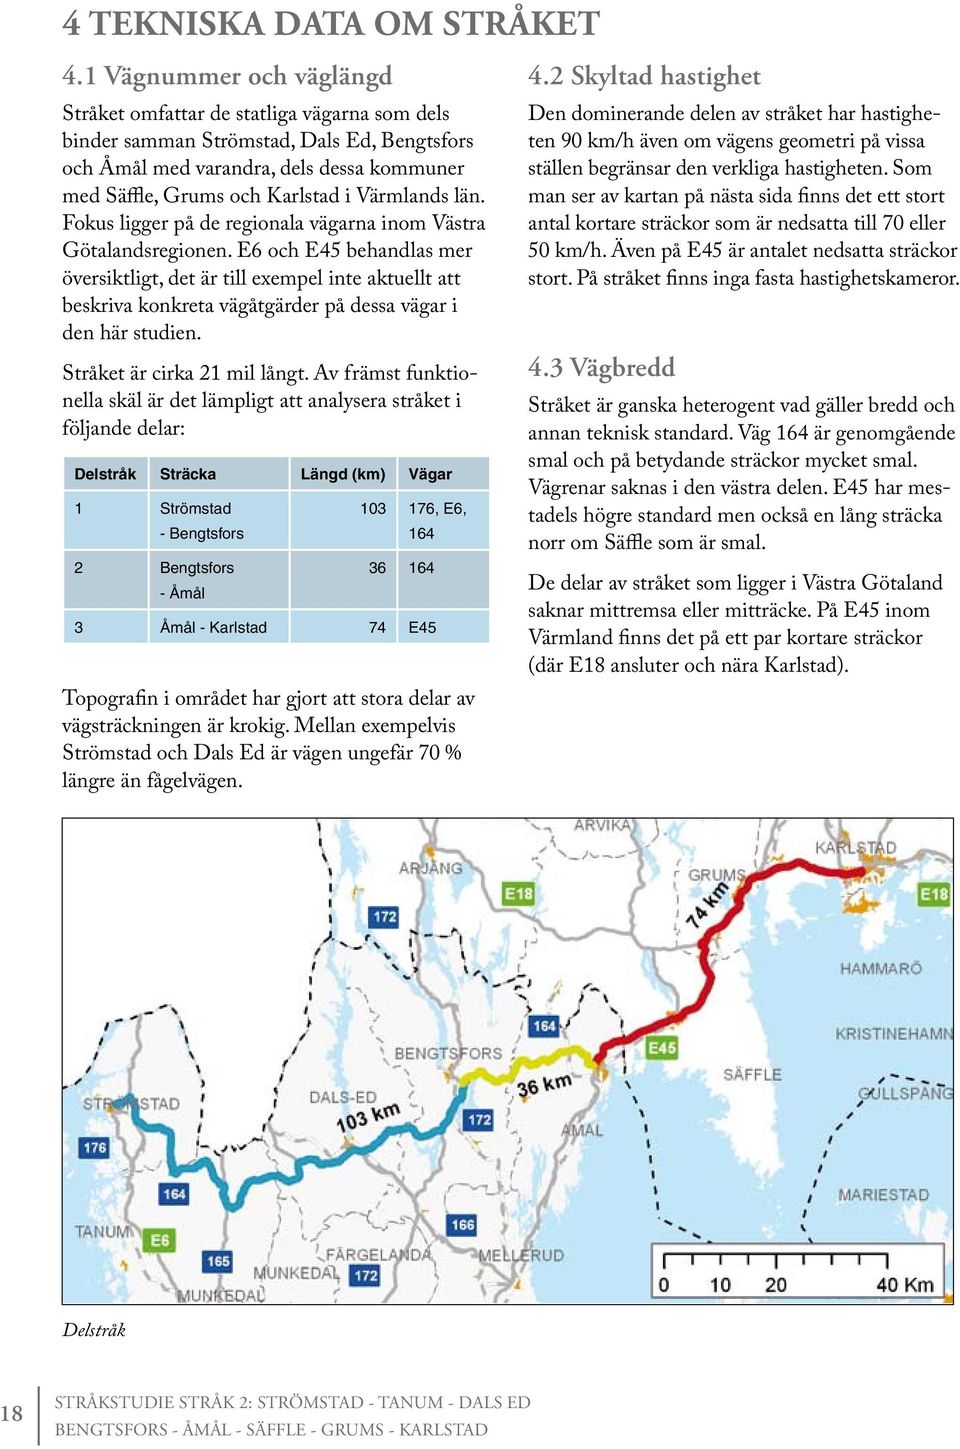 Värmlands län. Fokus ligger på de regionala vägarna inom Västra Götalandsregionen.